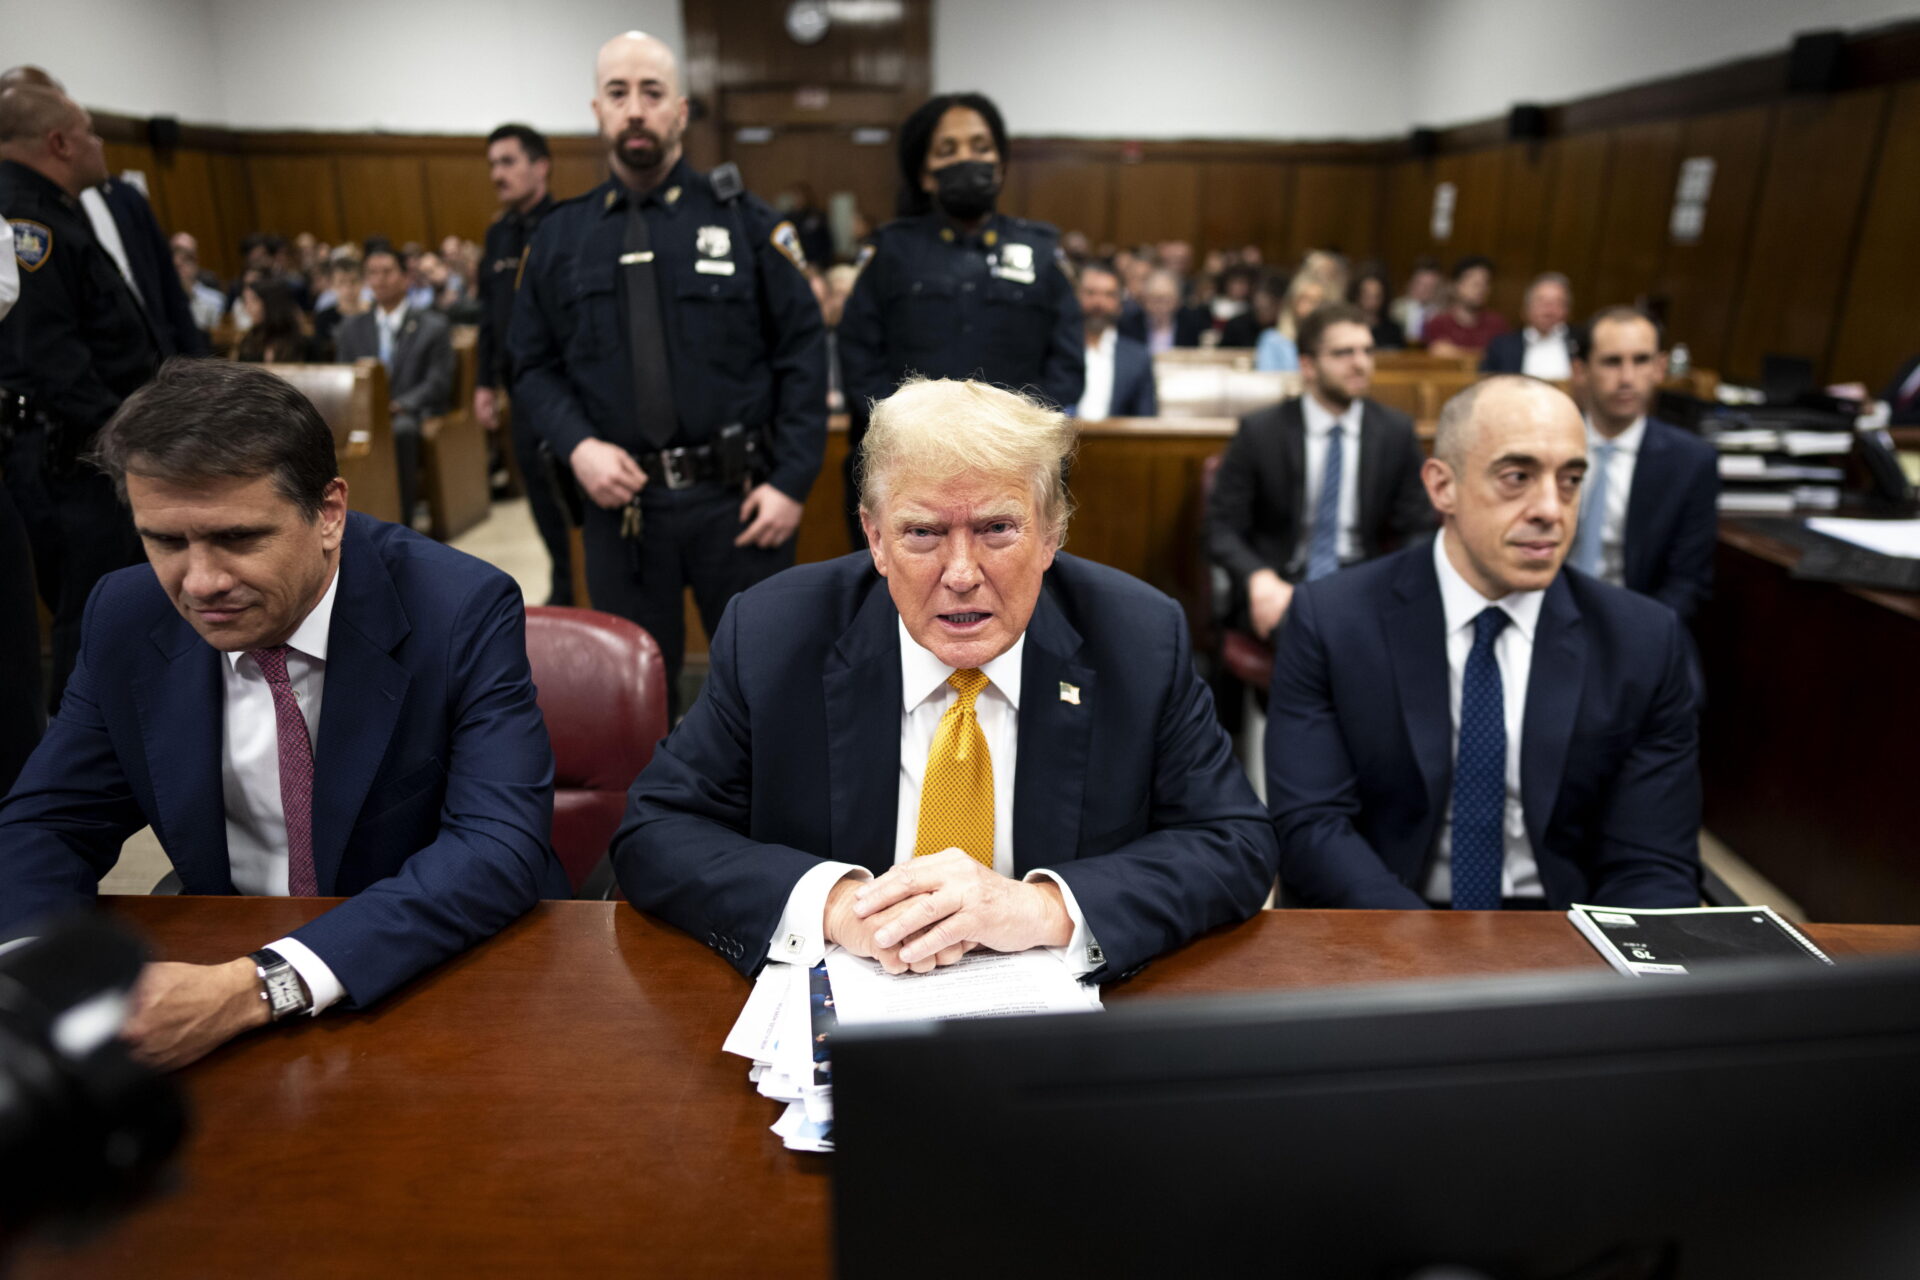 Juicio penal: Donald Trump es declarado culpable de falsificar documentos